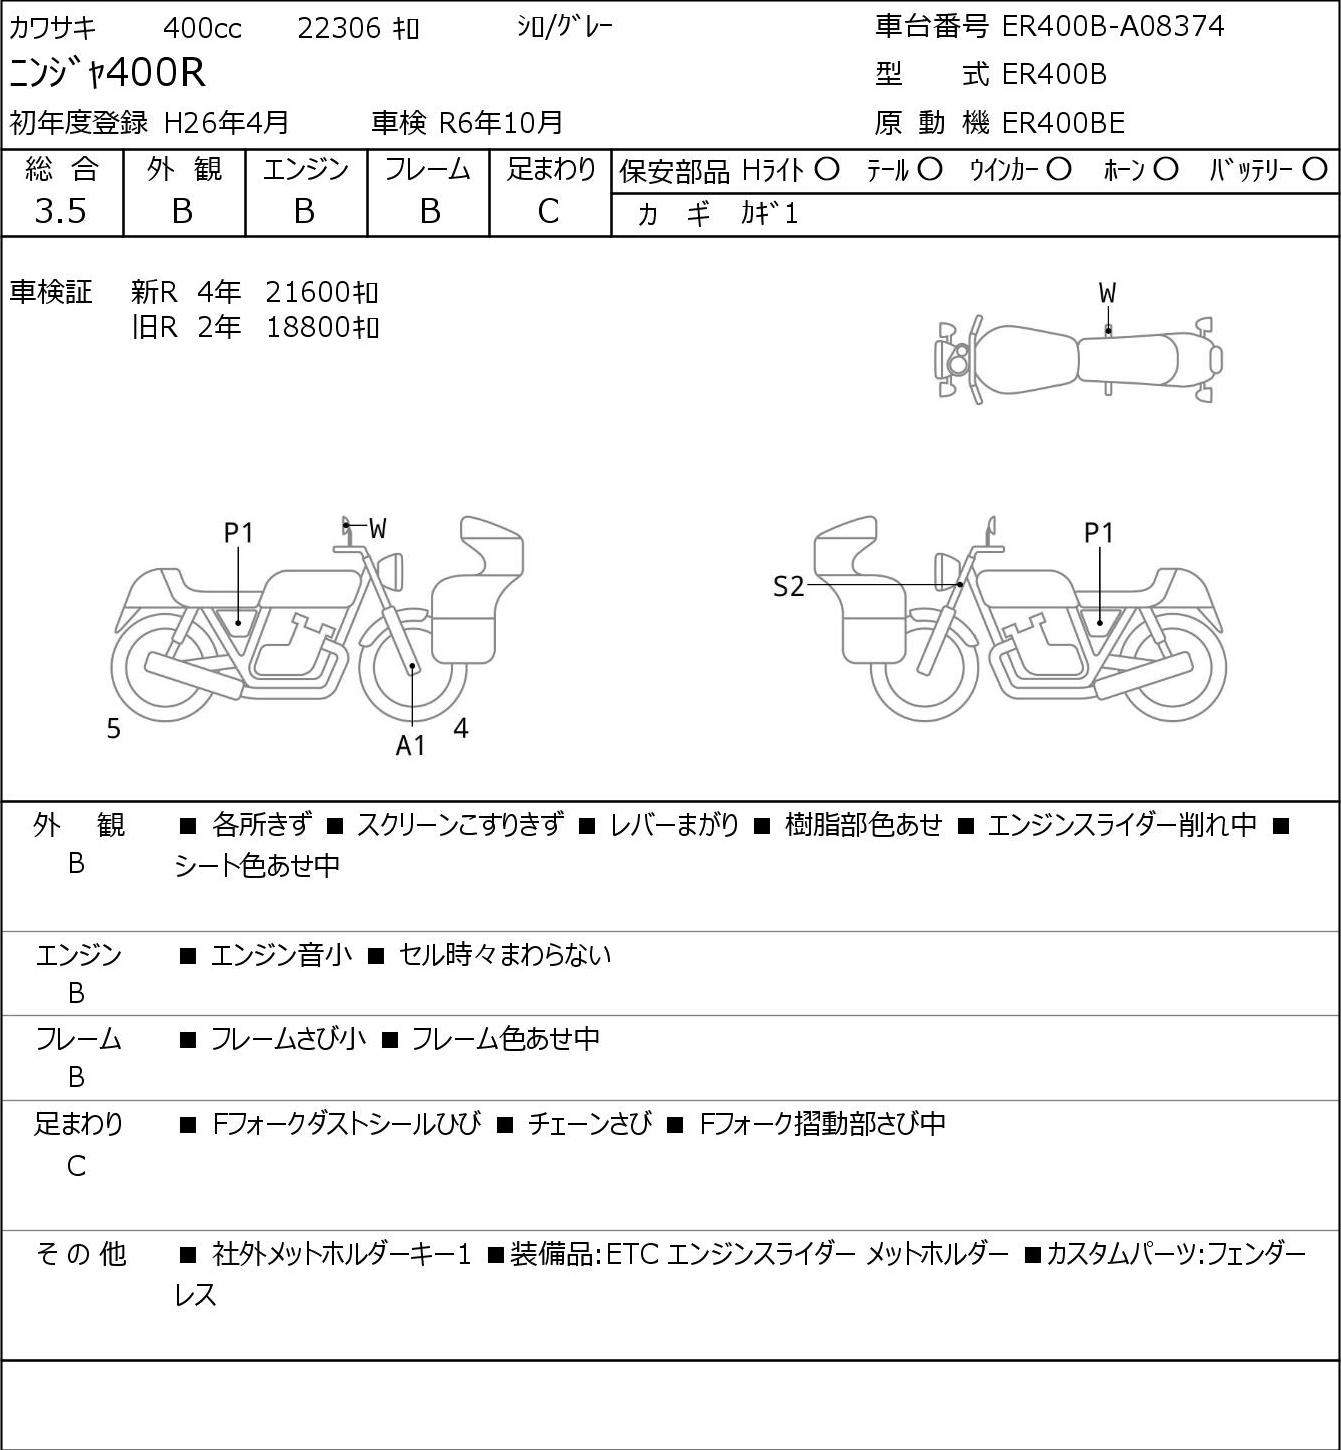 Kawasaki NINJA 400 R ER400B - купить недорого